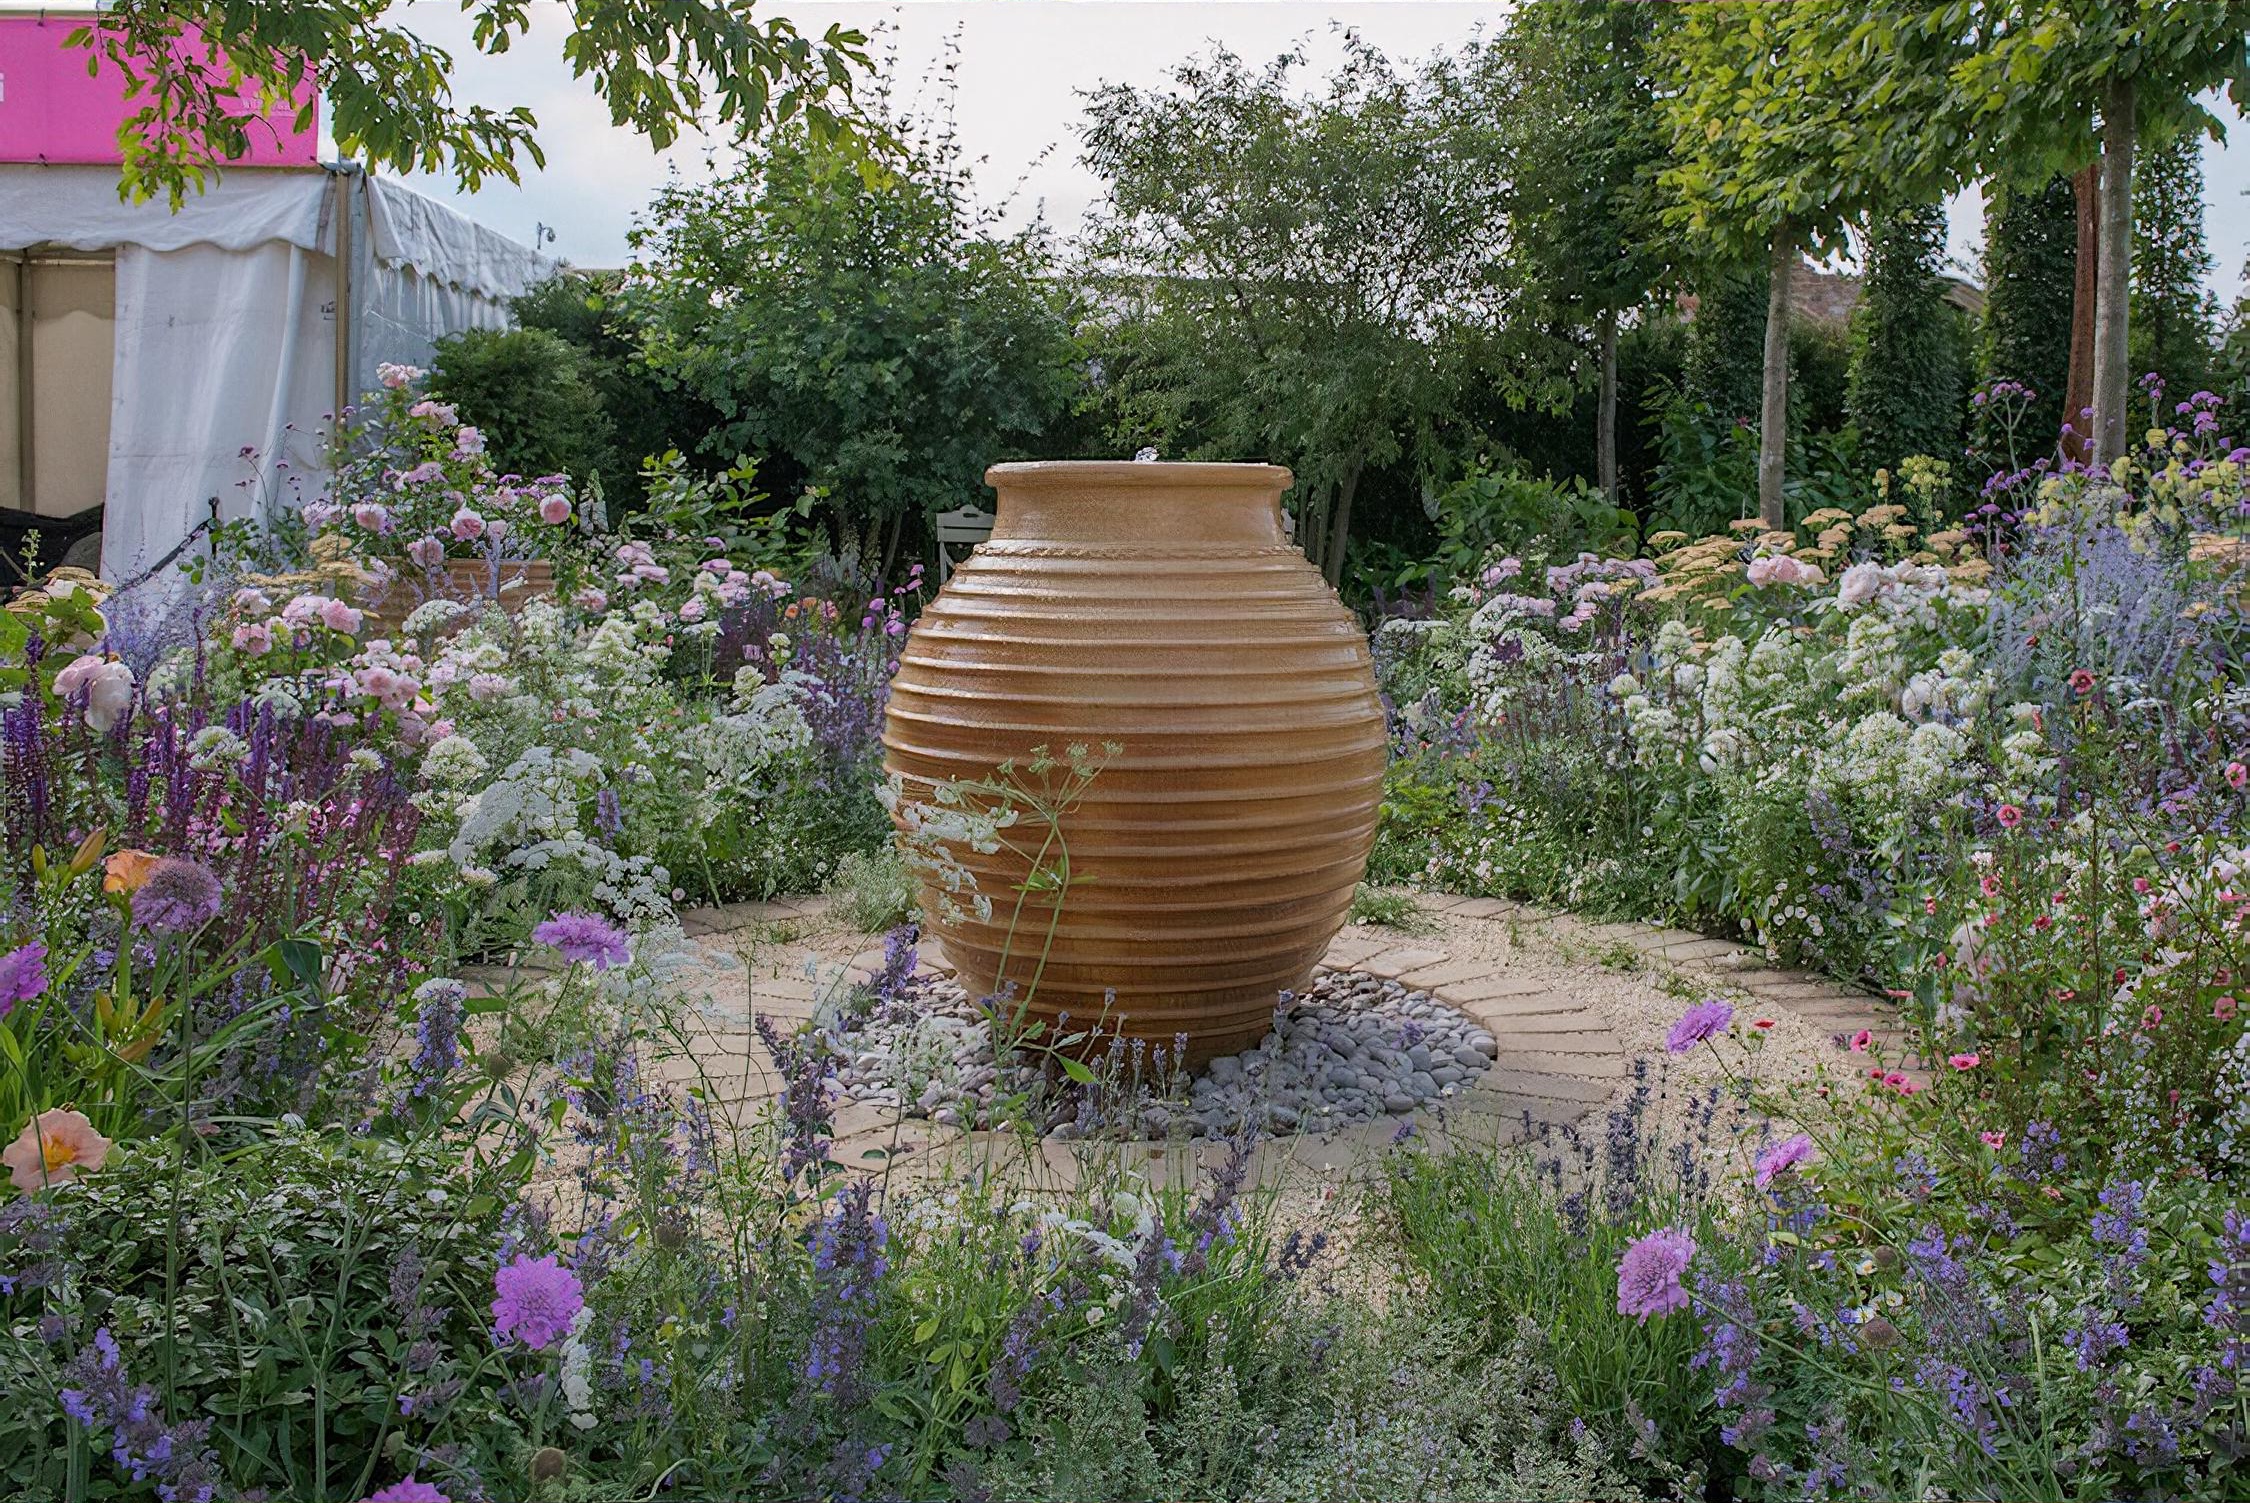 Best of Both Worlds Garden RHS Hampton Court Flower Show 2018 by garden designer Rosemary Coldstream